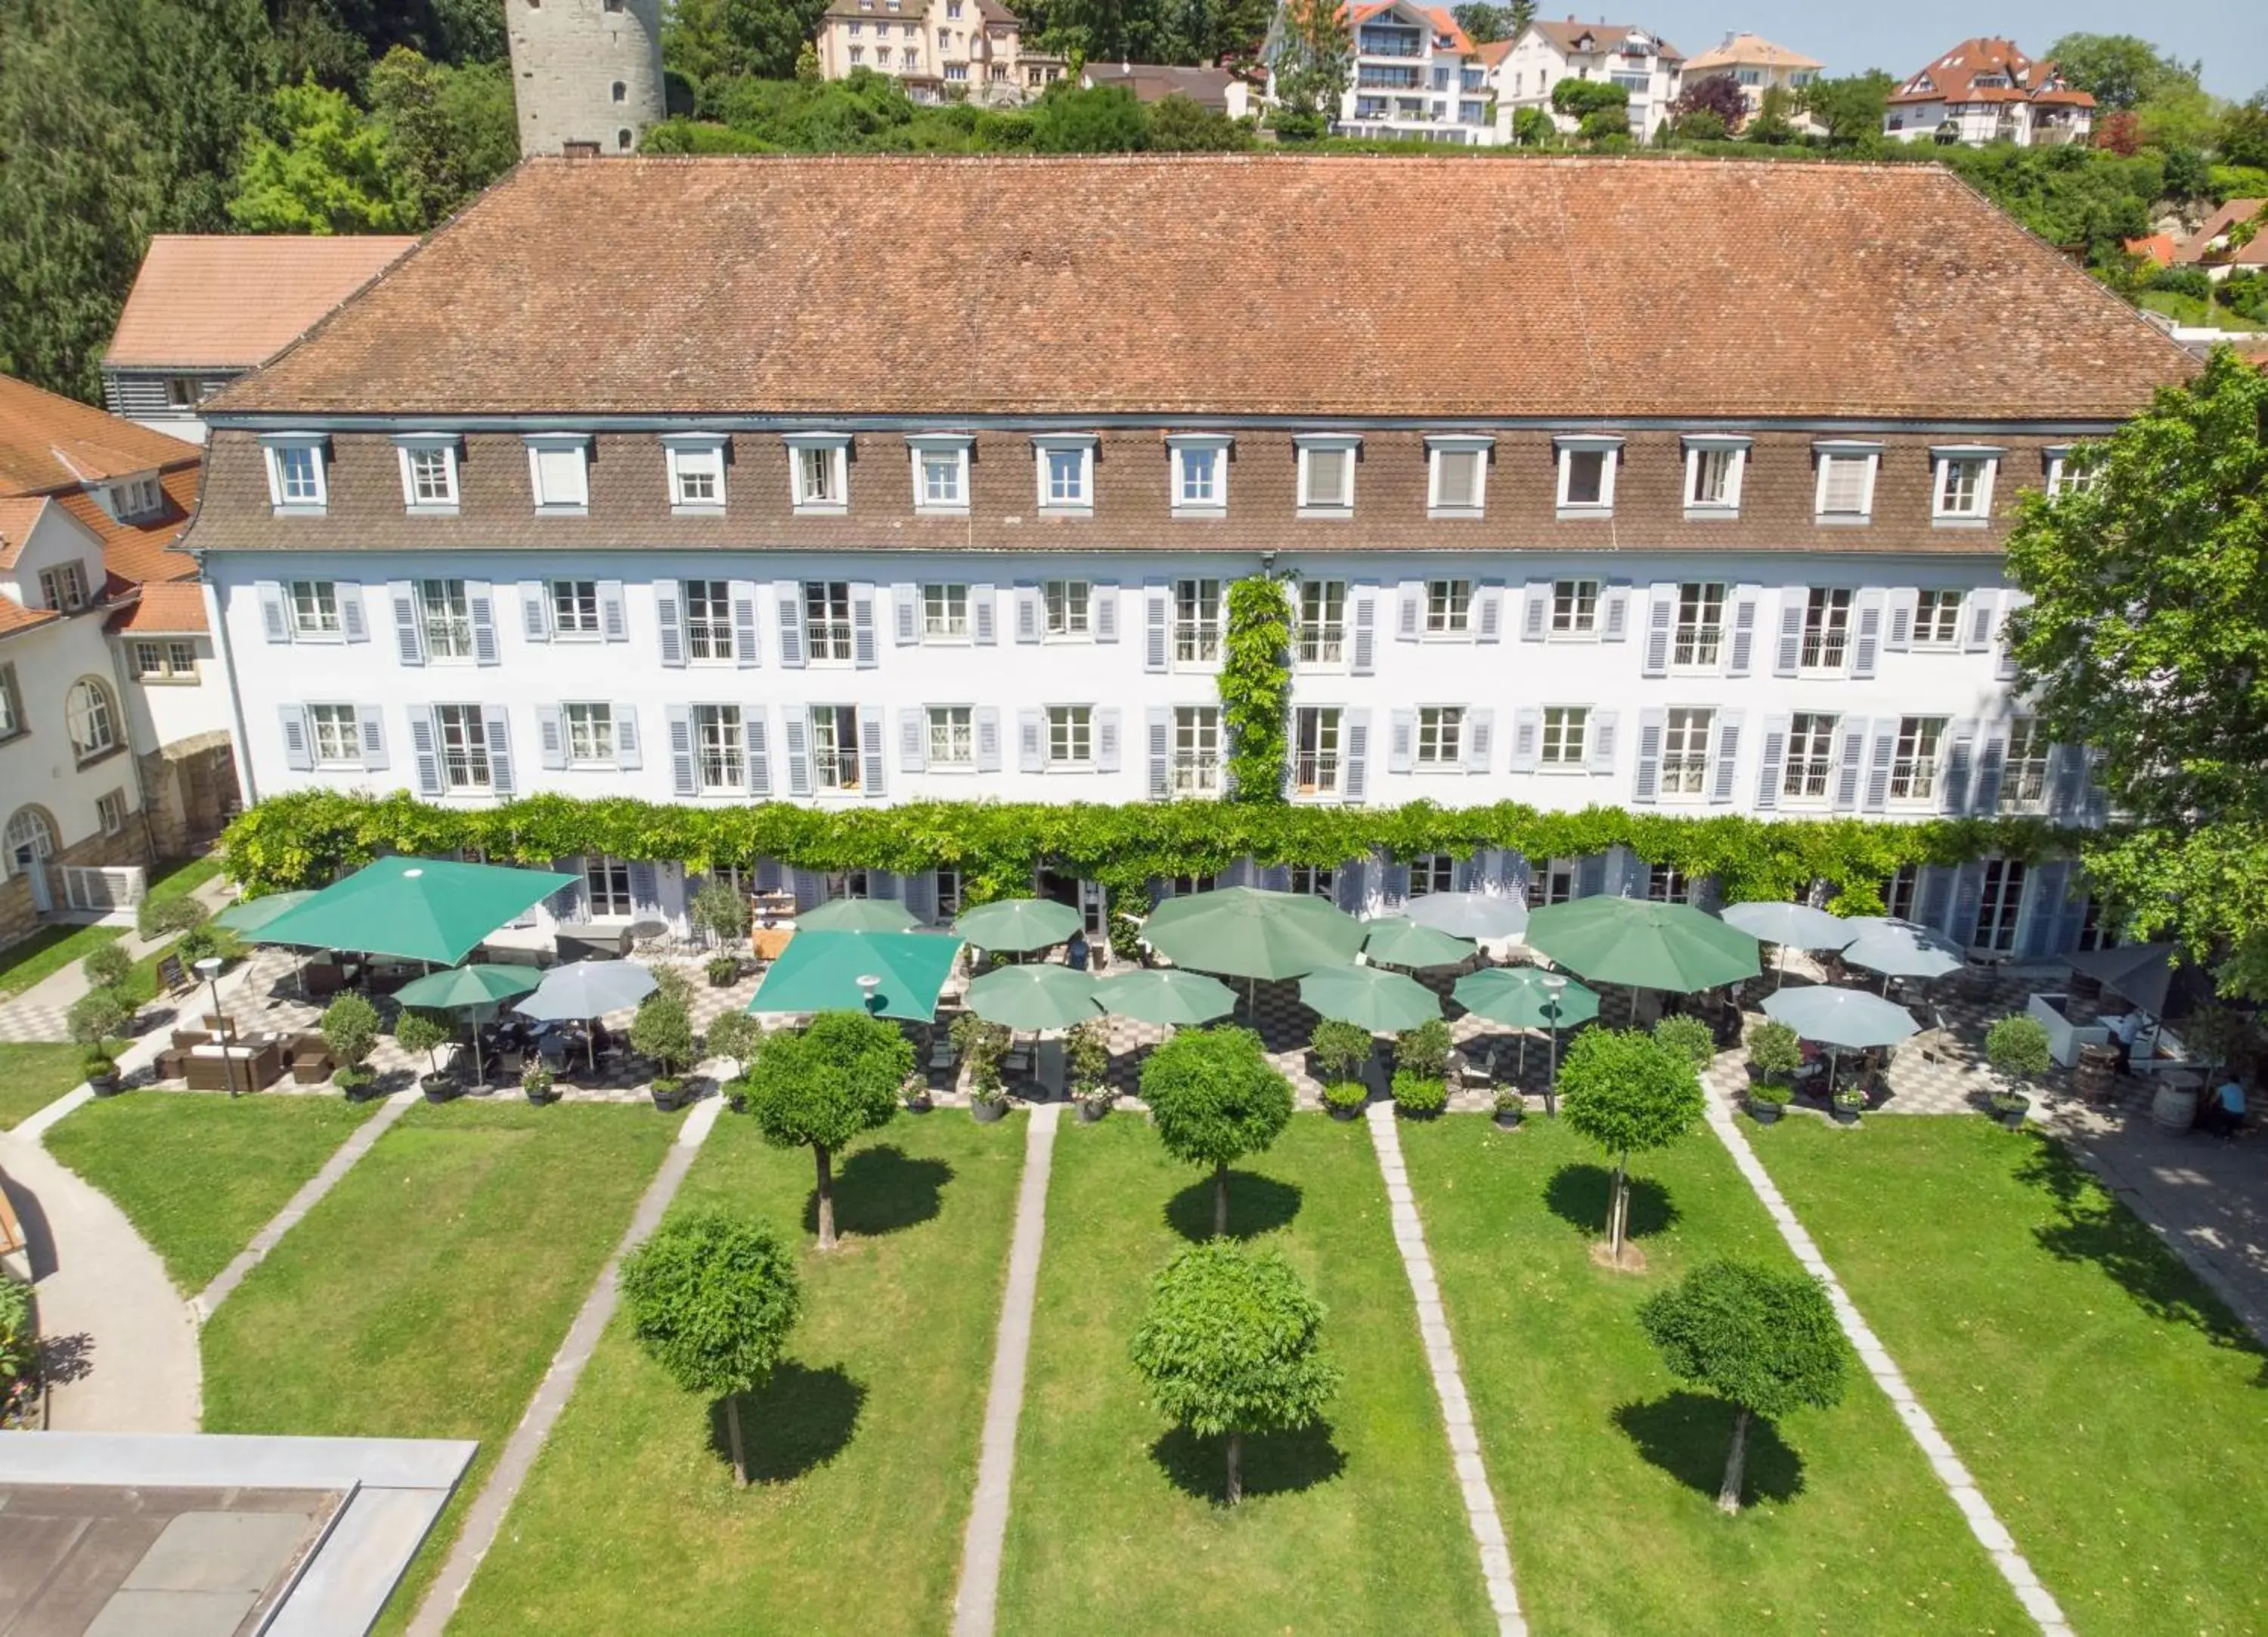 Property building, Bird's-eye View in Bad Hotel Überlingen